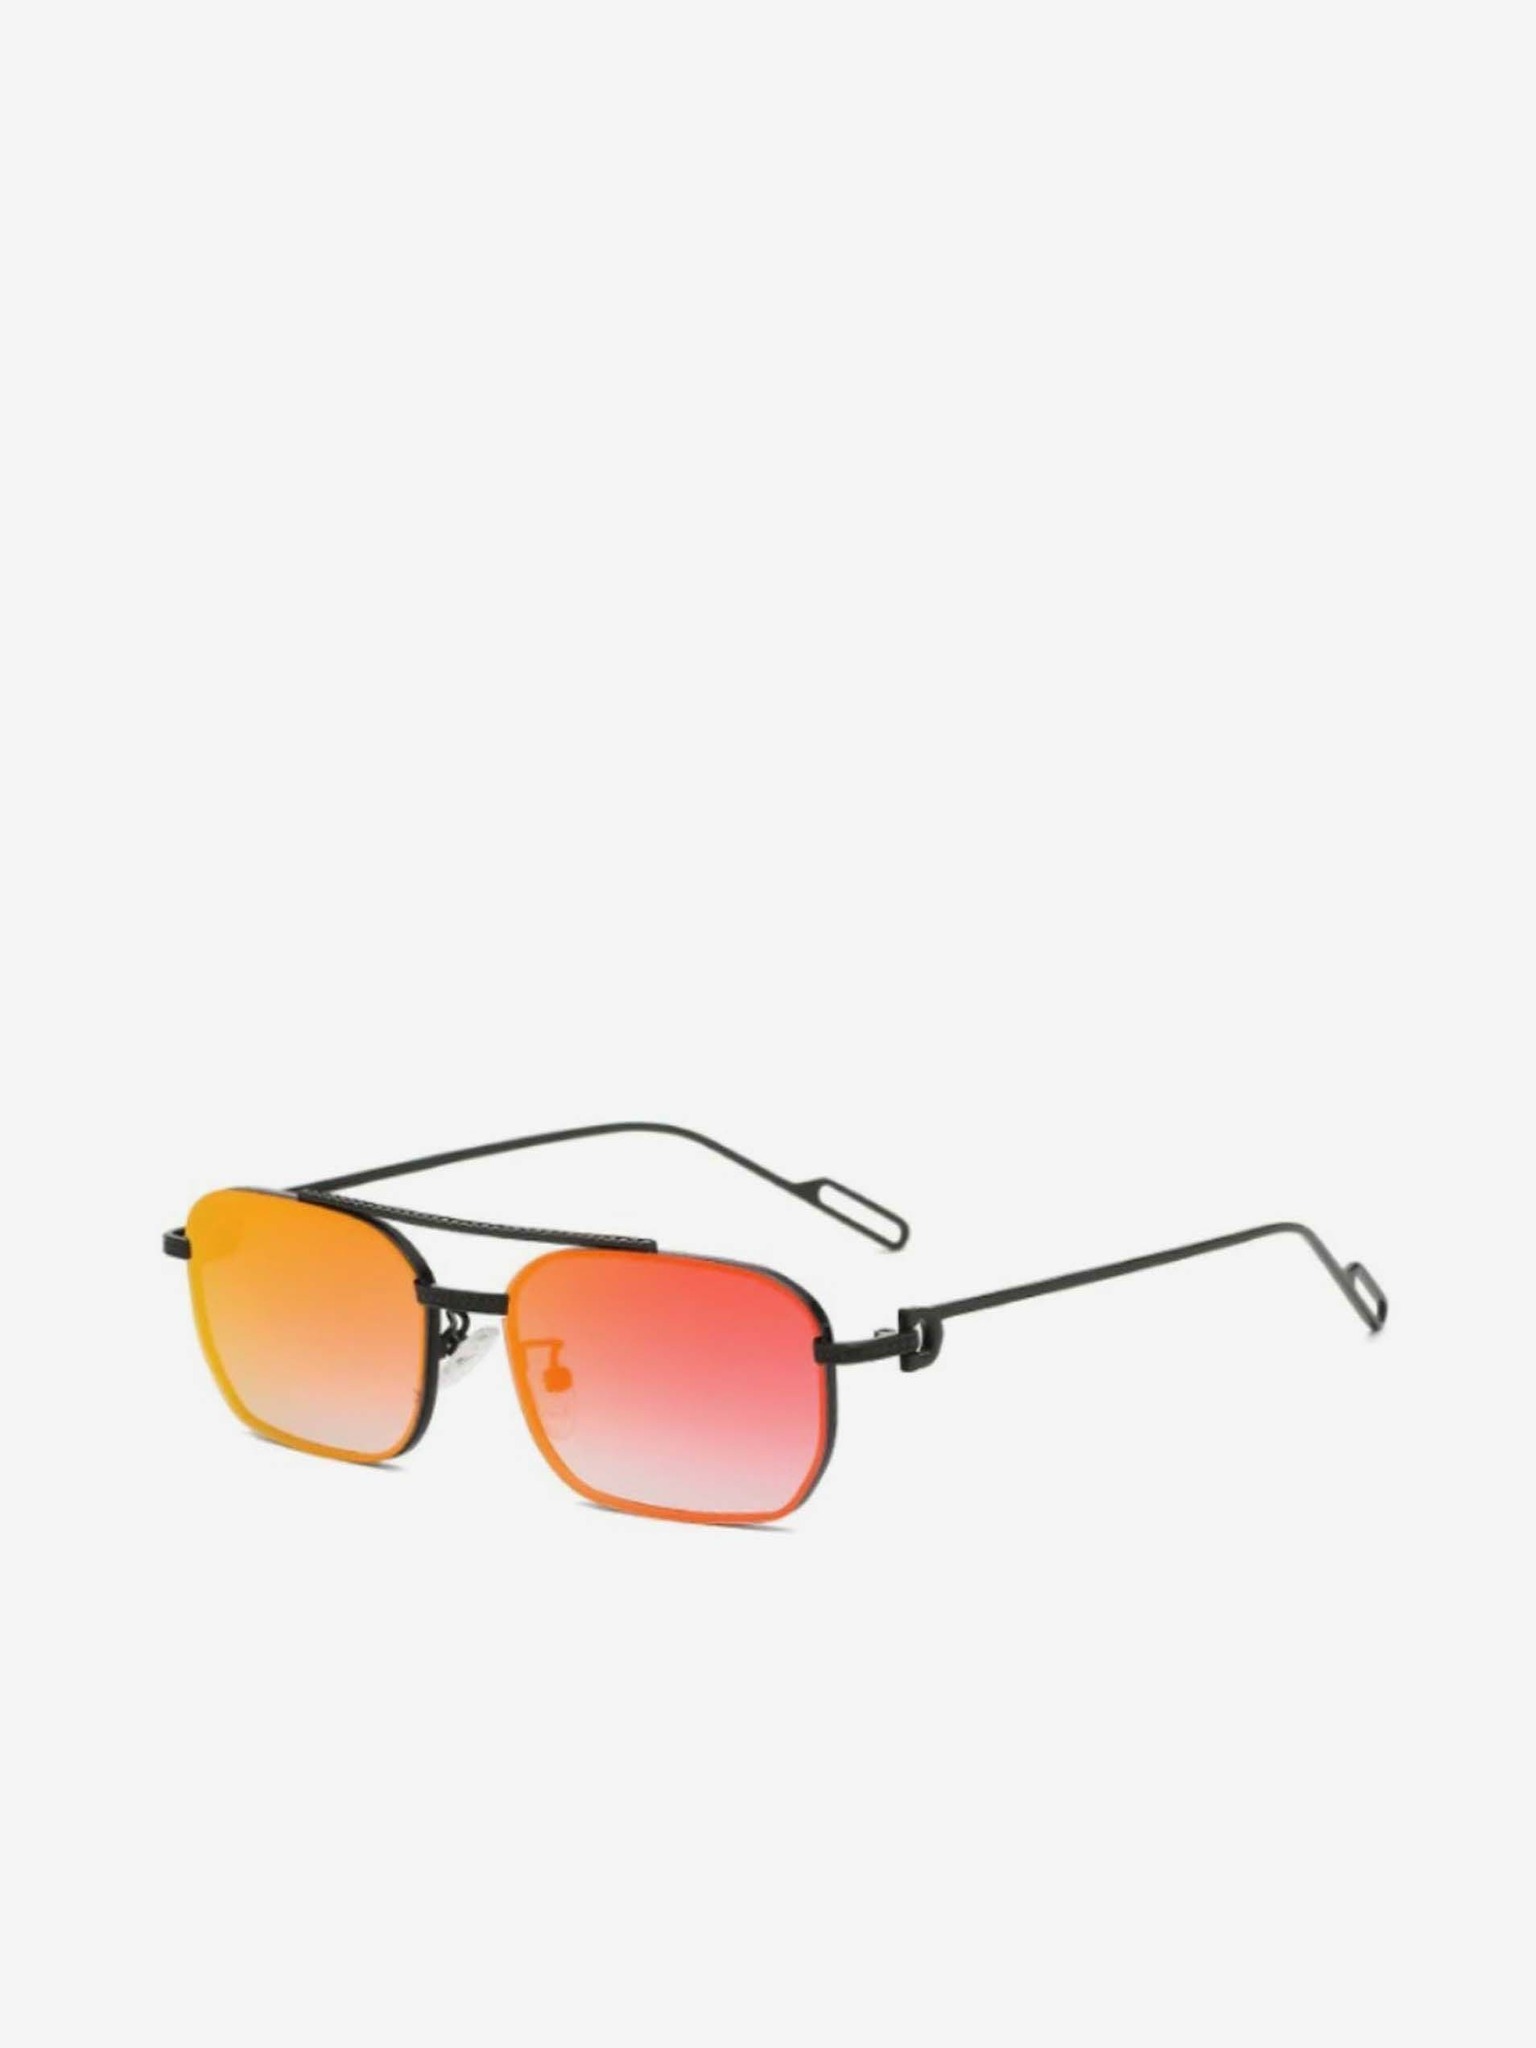 7x Aviator Sunglasses With Orange Colour Lens | ASOS